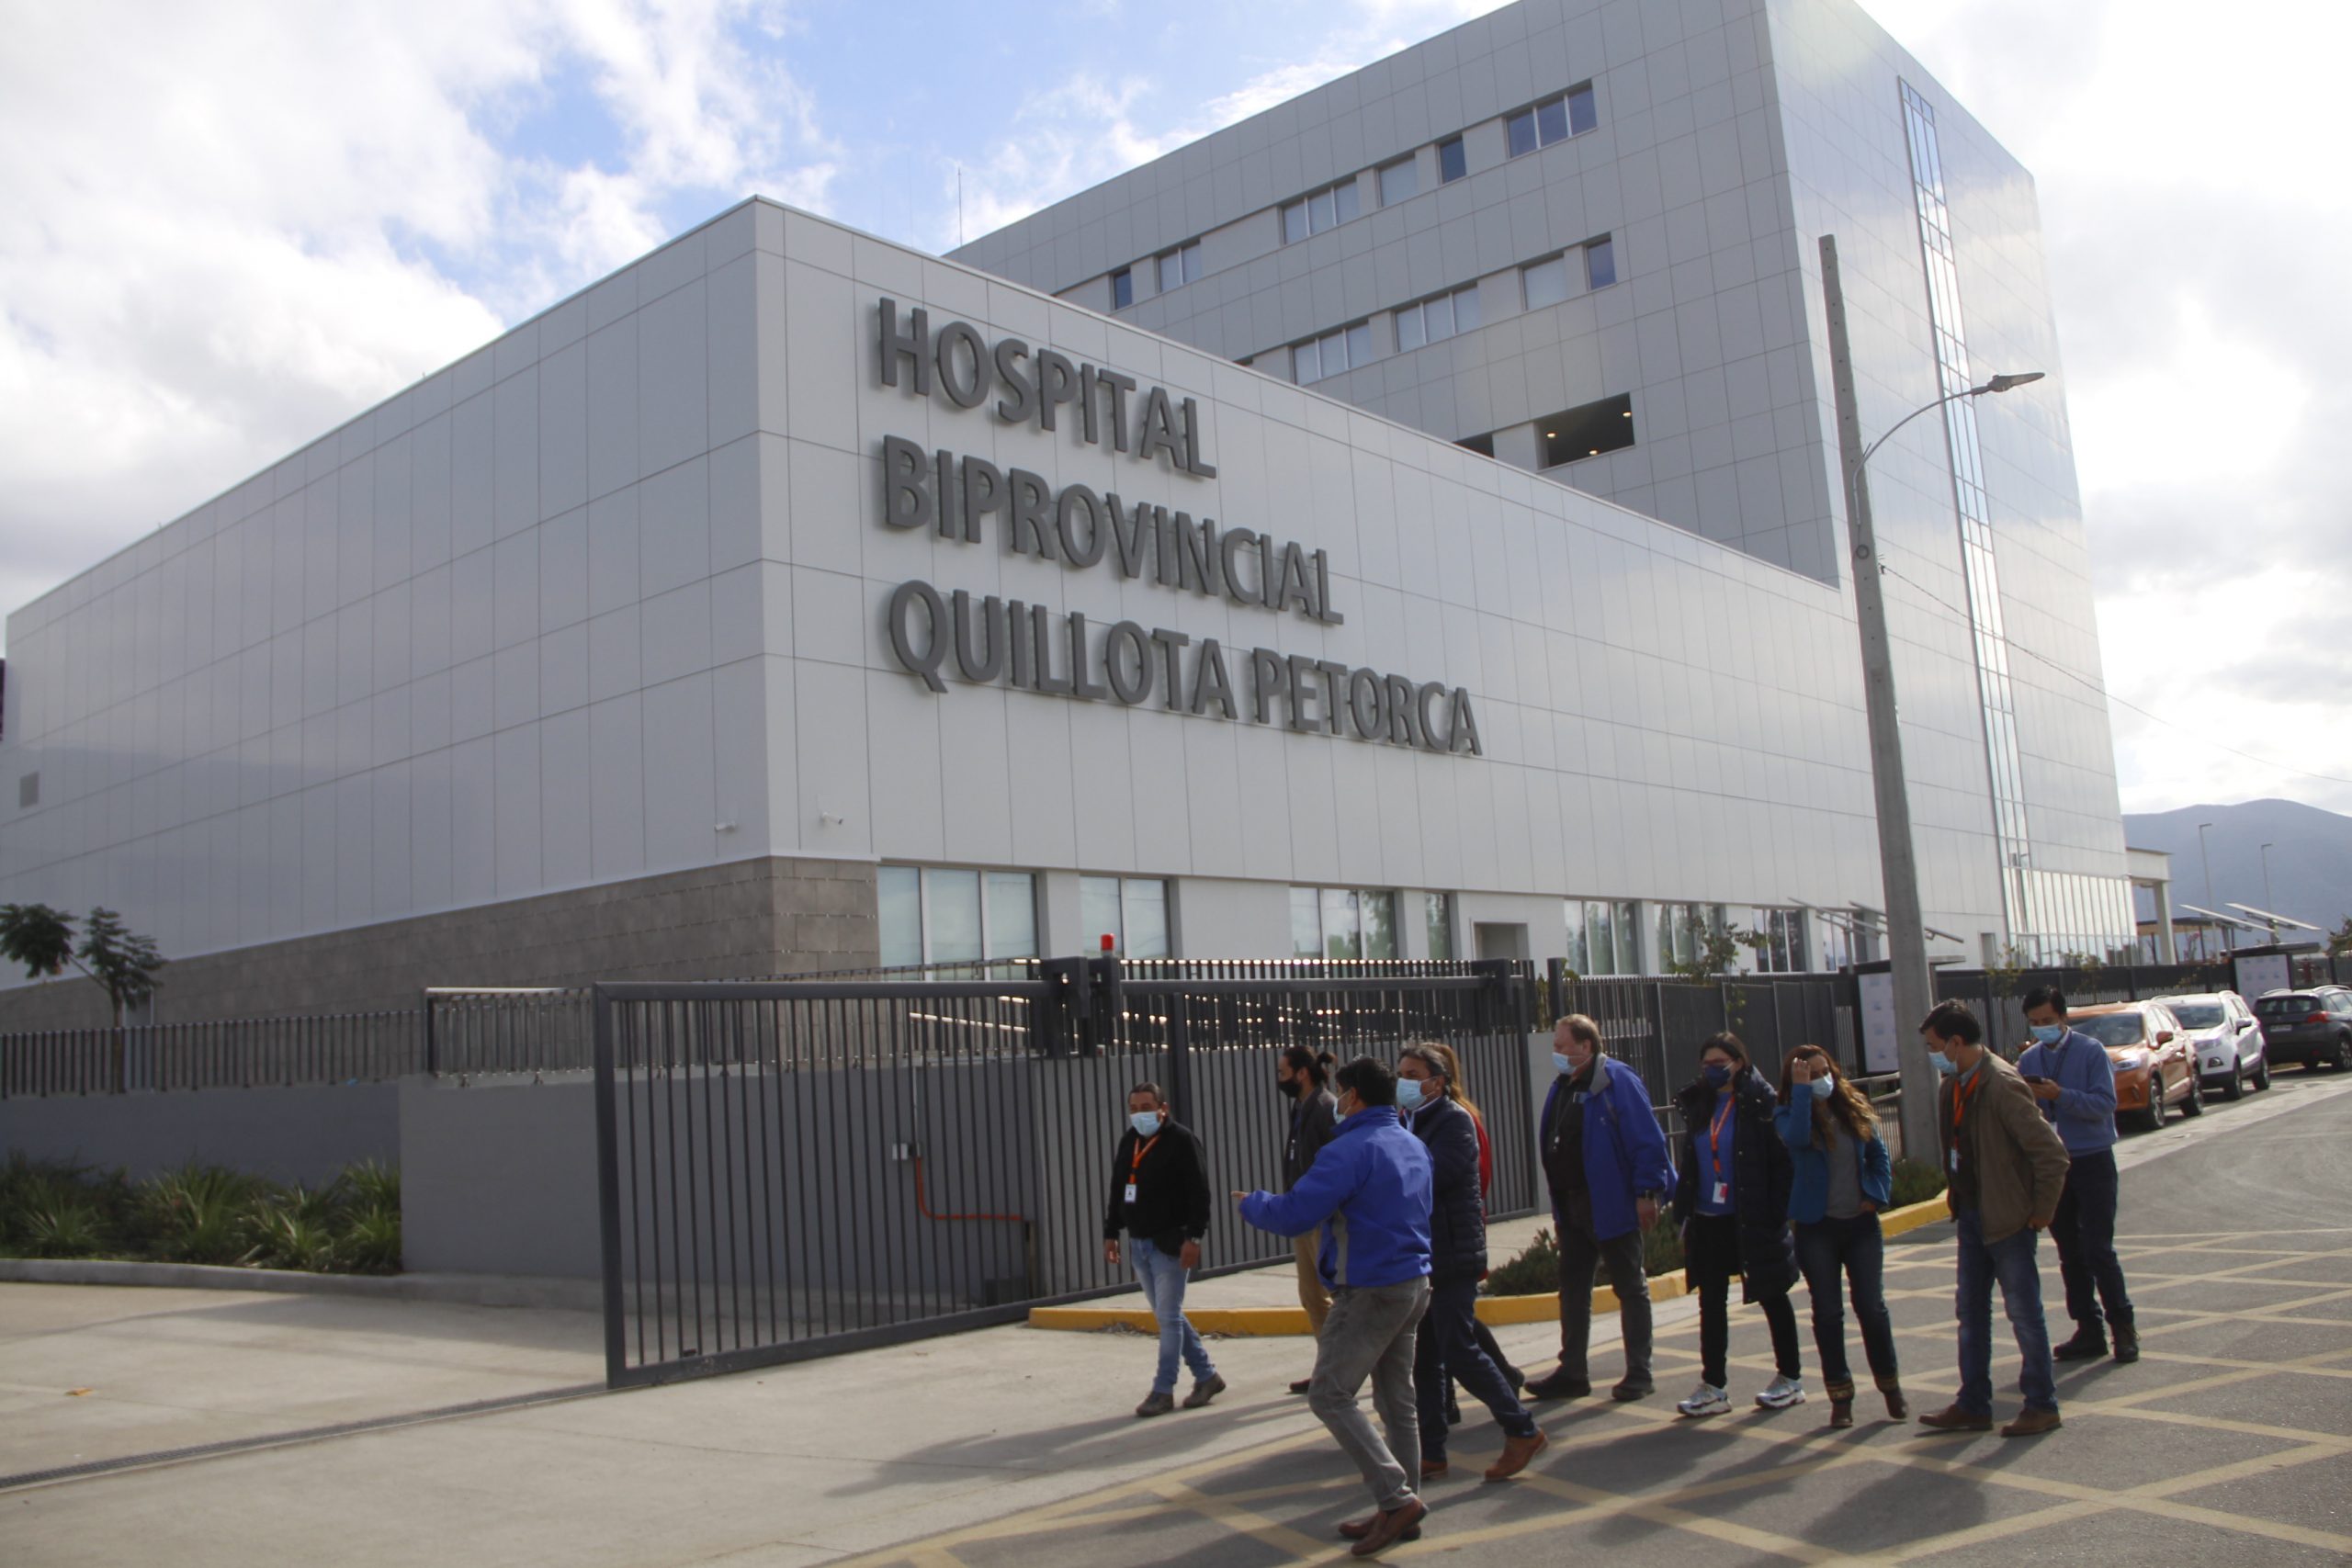 Más de 20 horas de espera en atención de urgencias de adultos: Ofician a Ministro de Salud por problemas en red hospitalaria de 5 provincias de Valparaíso